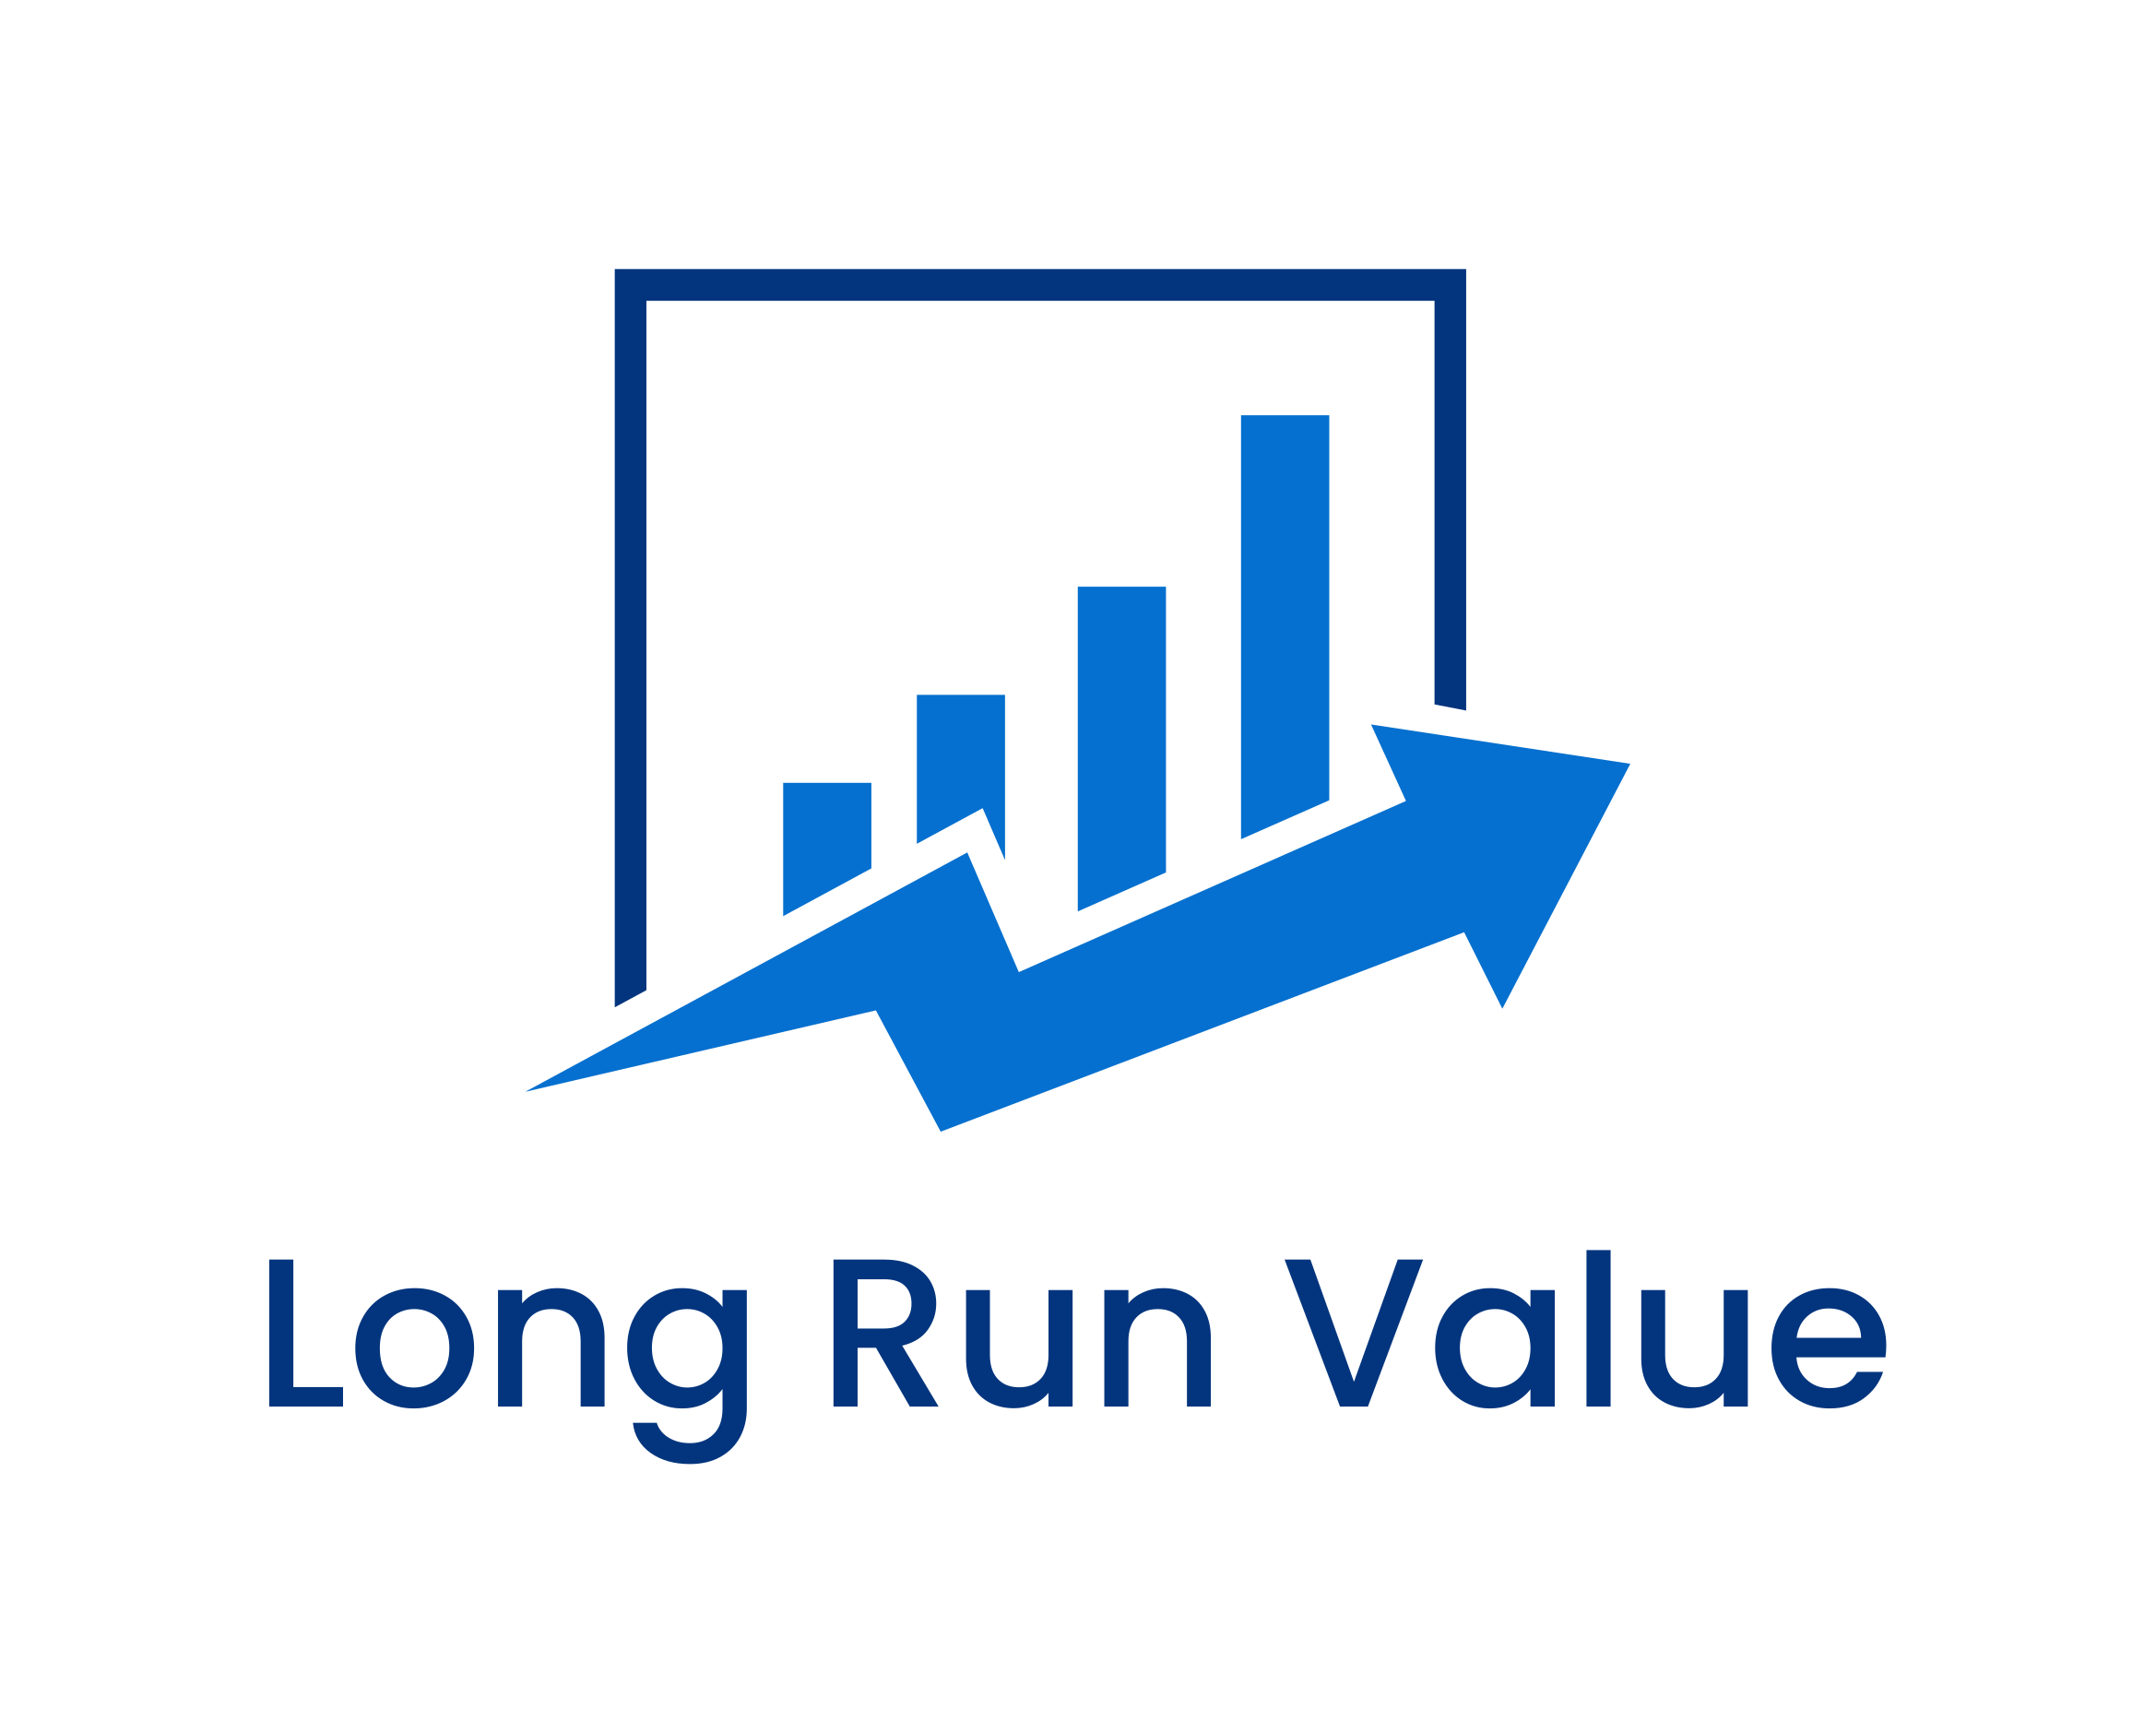 Long Run Value